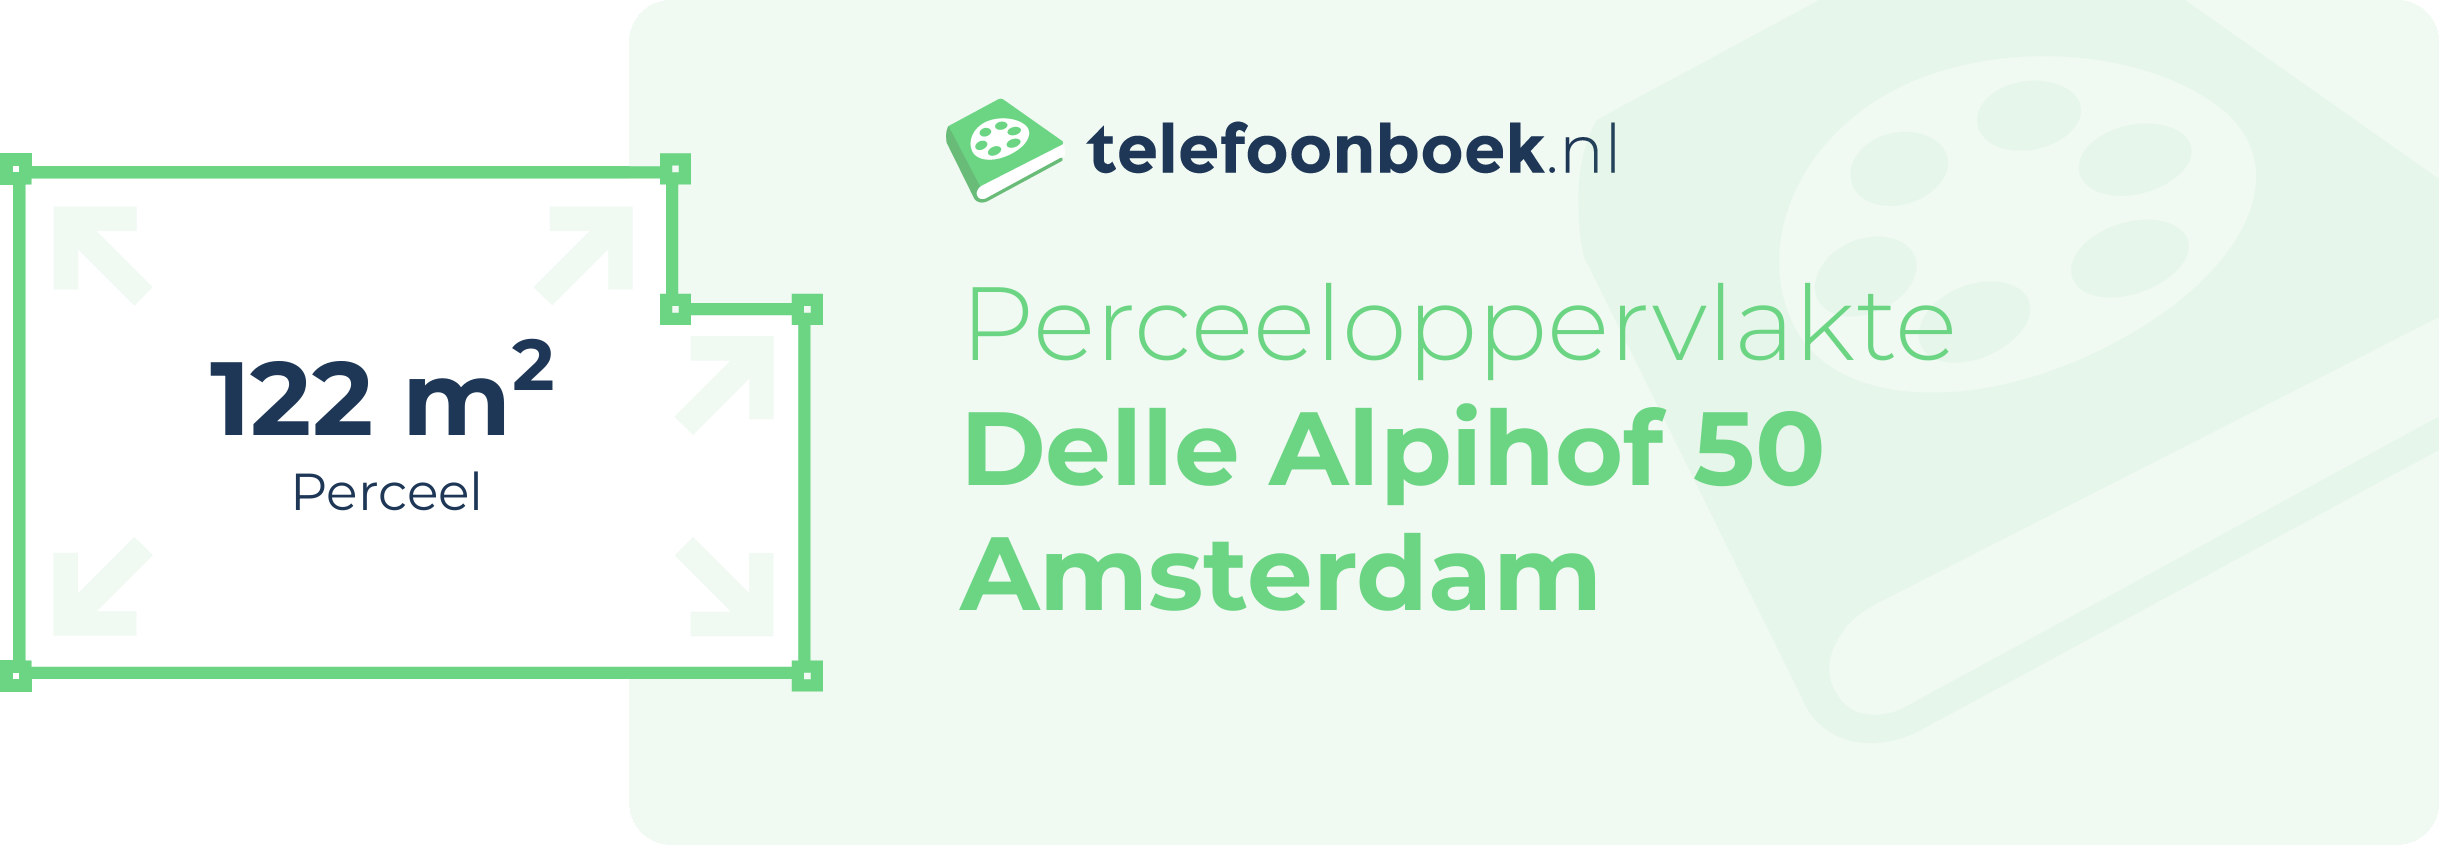 Perceeloppervlakte Delle Alpihof 50 Amsterdam